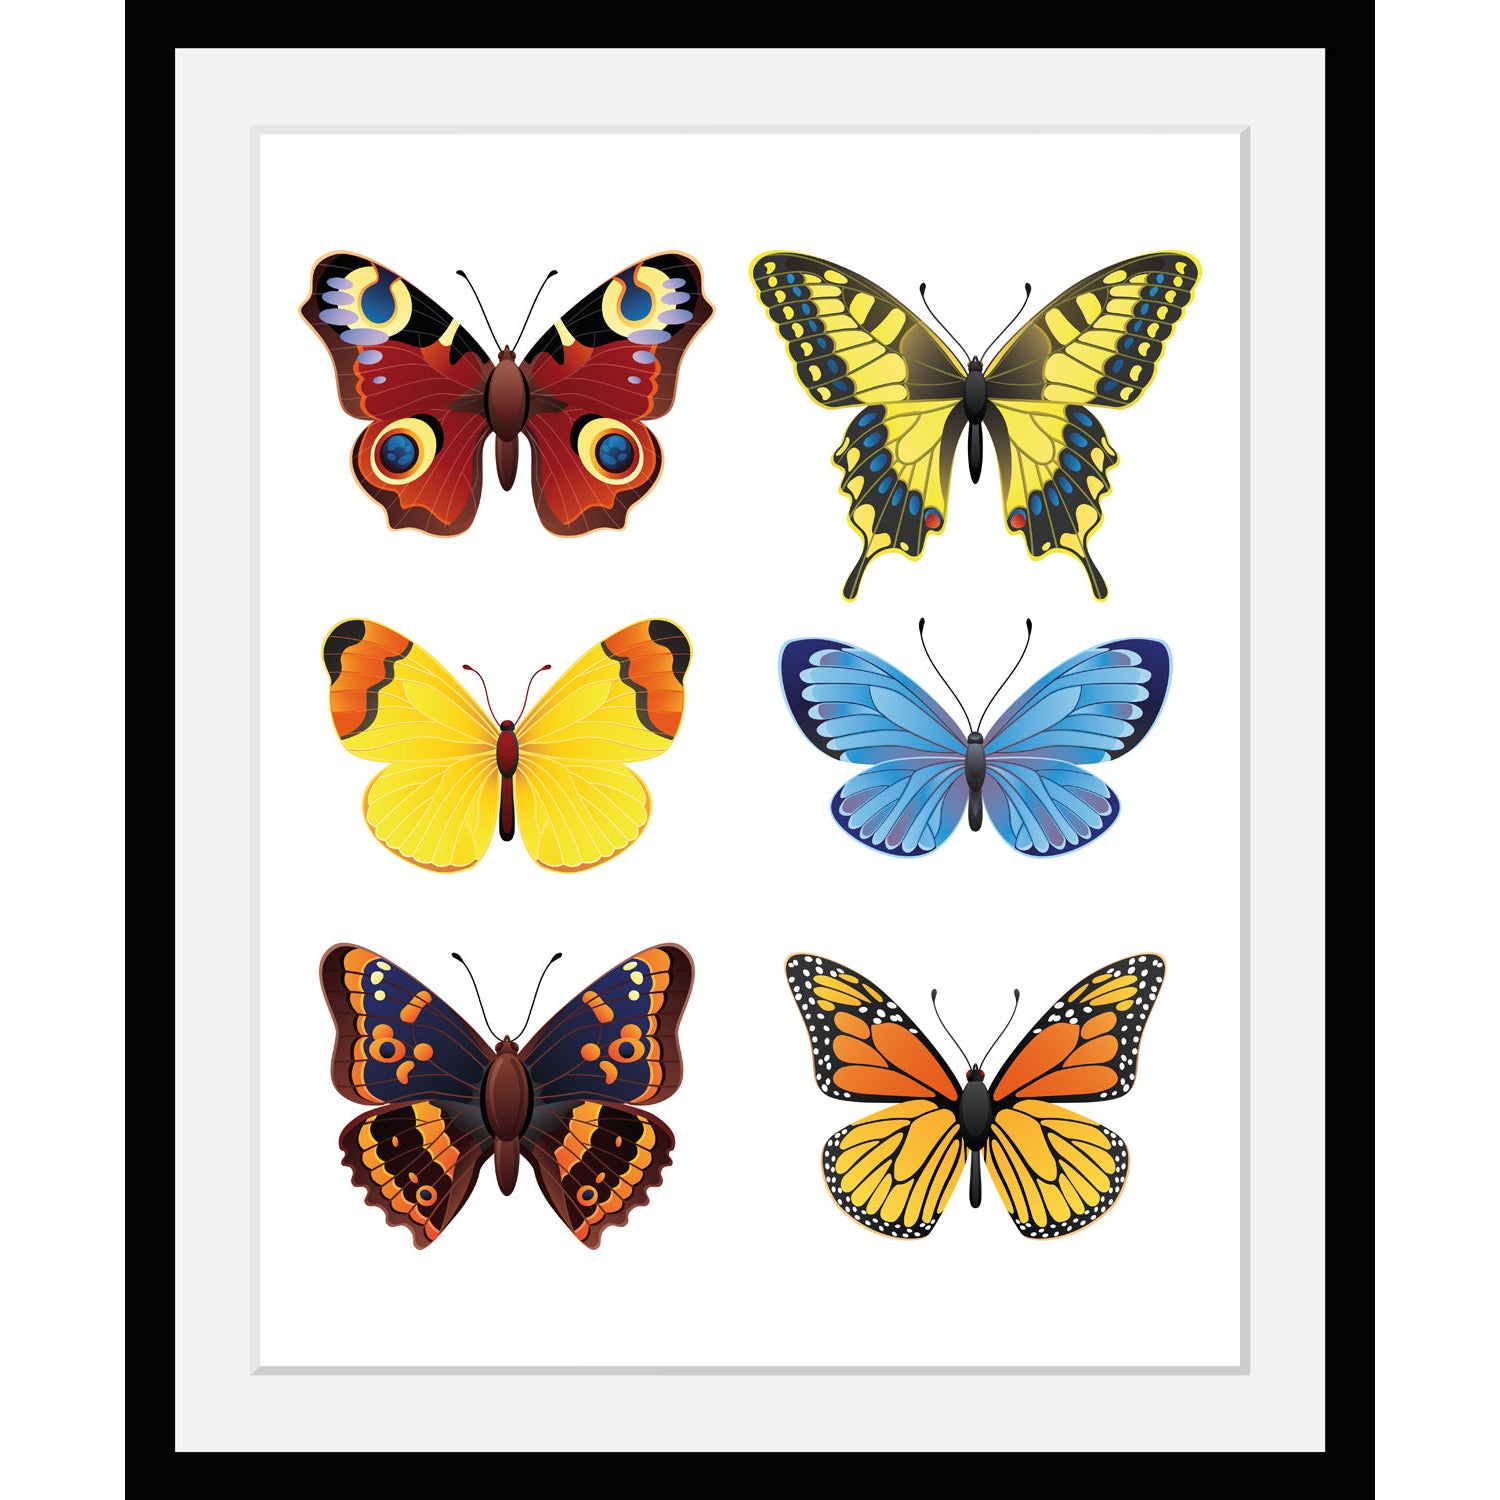 Rahmenbild - Many butterflies